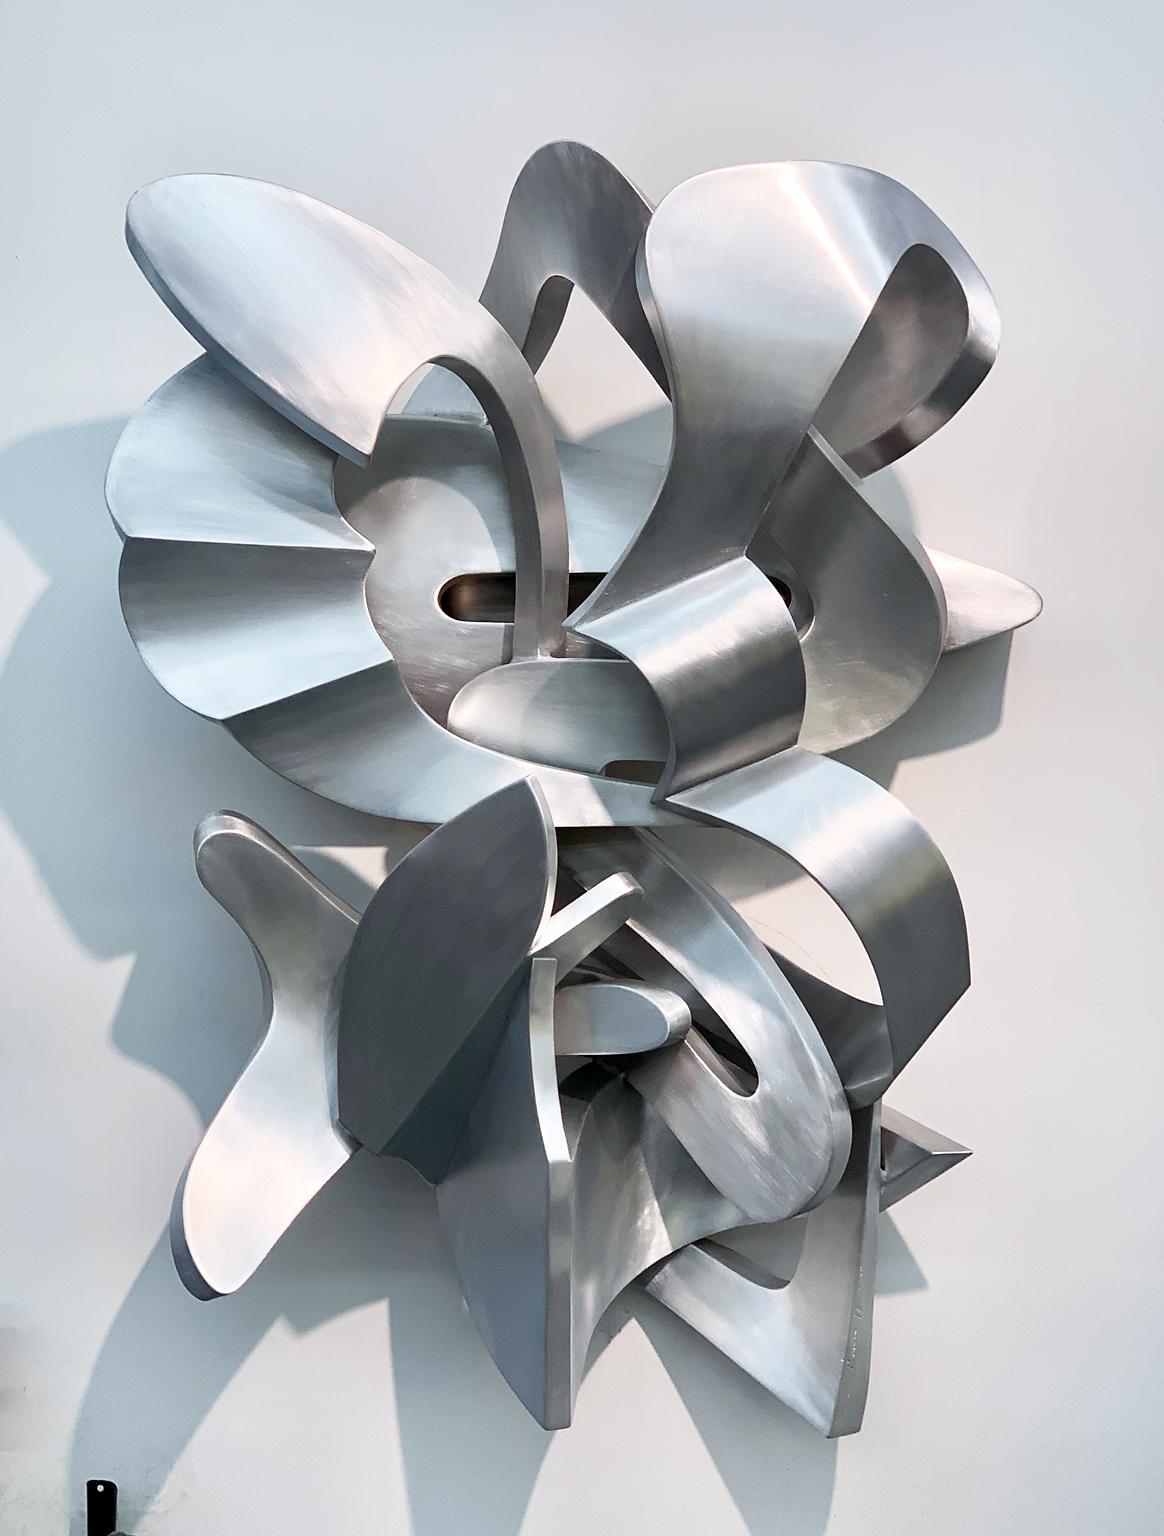 Zeitgenössische abstrakte Metall-Wandrelief-Skulptur „Fernande“ in Silber – Sculpture von Kevin Barrett